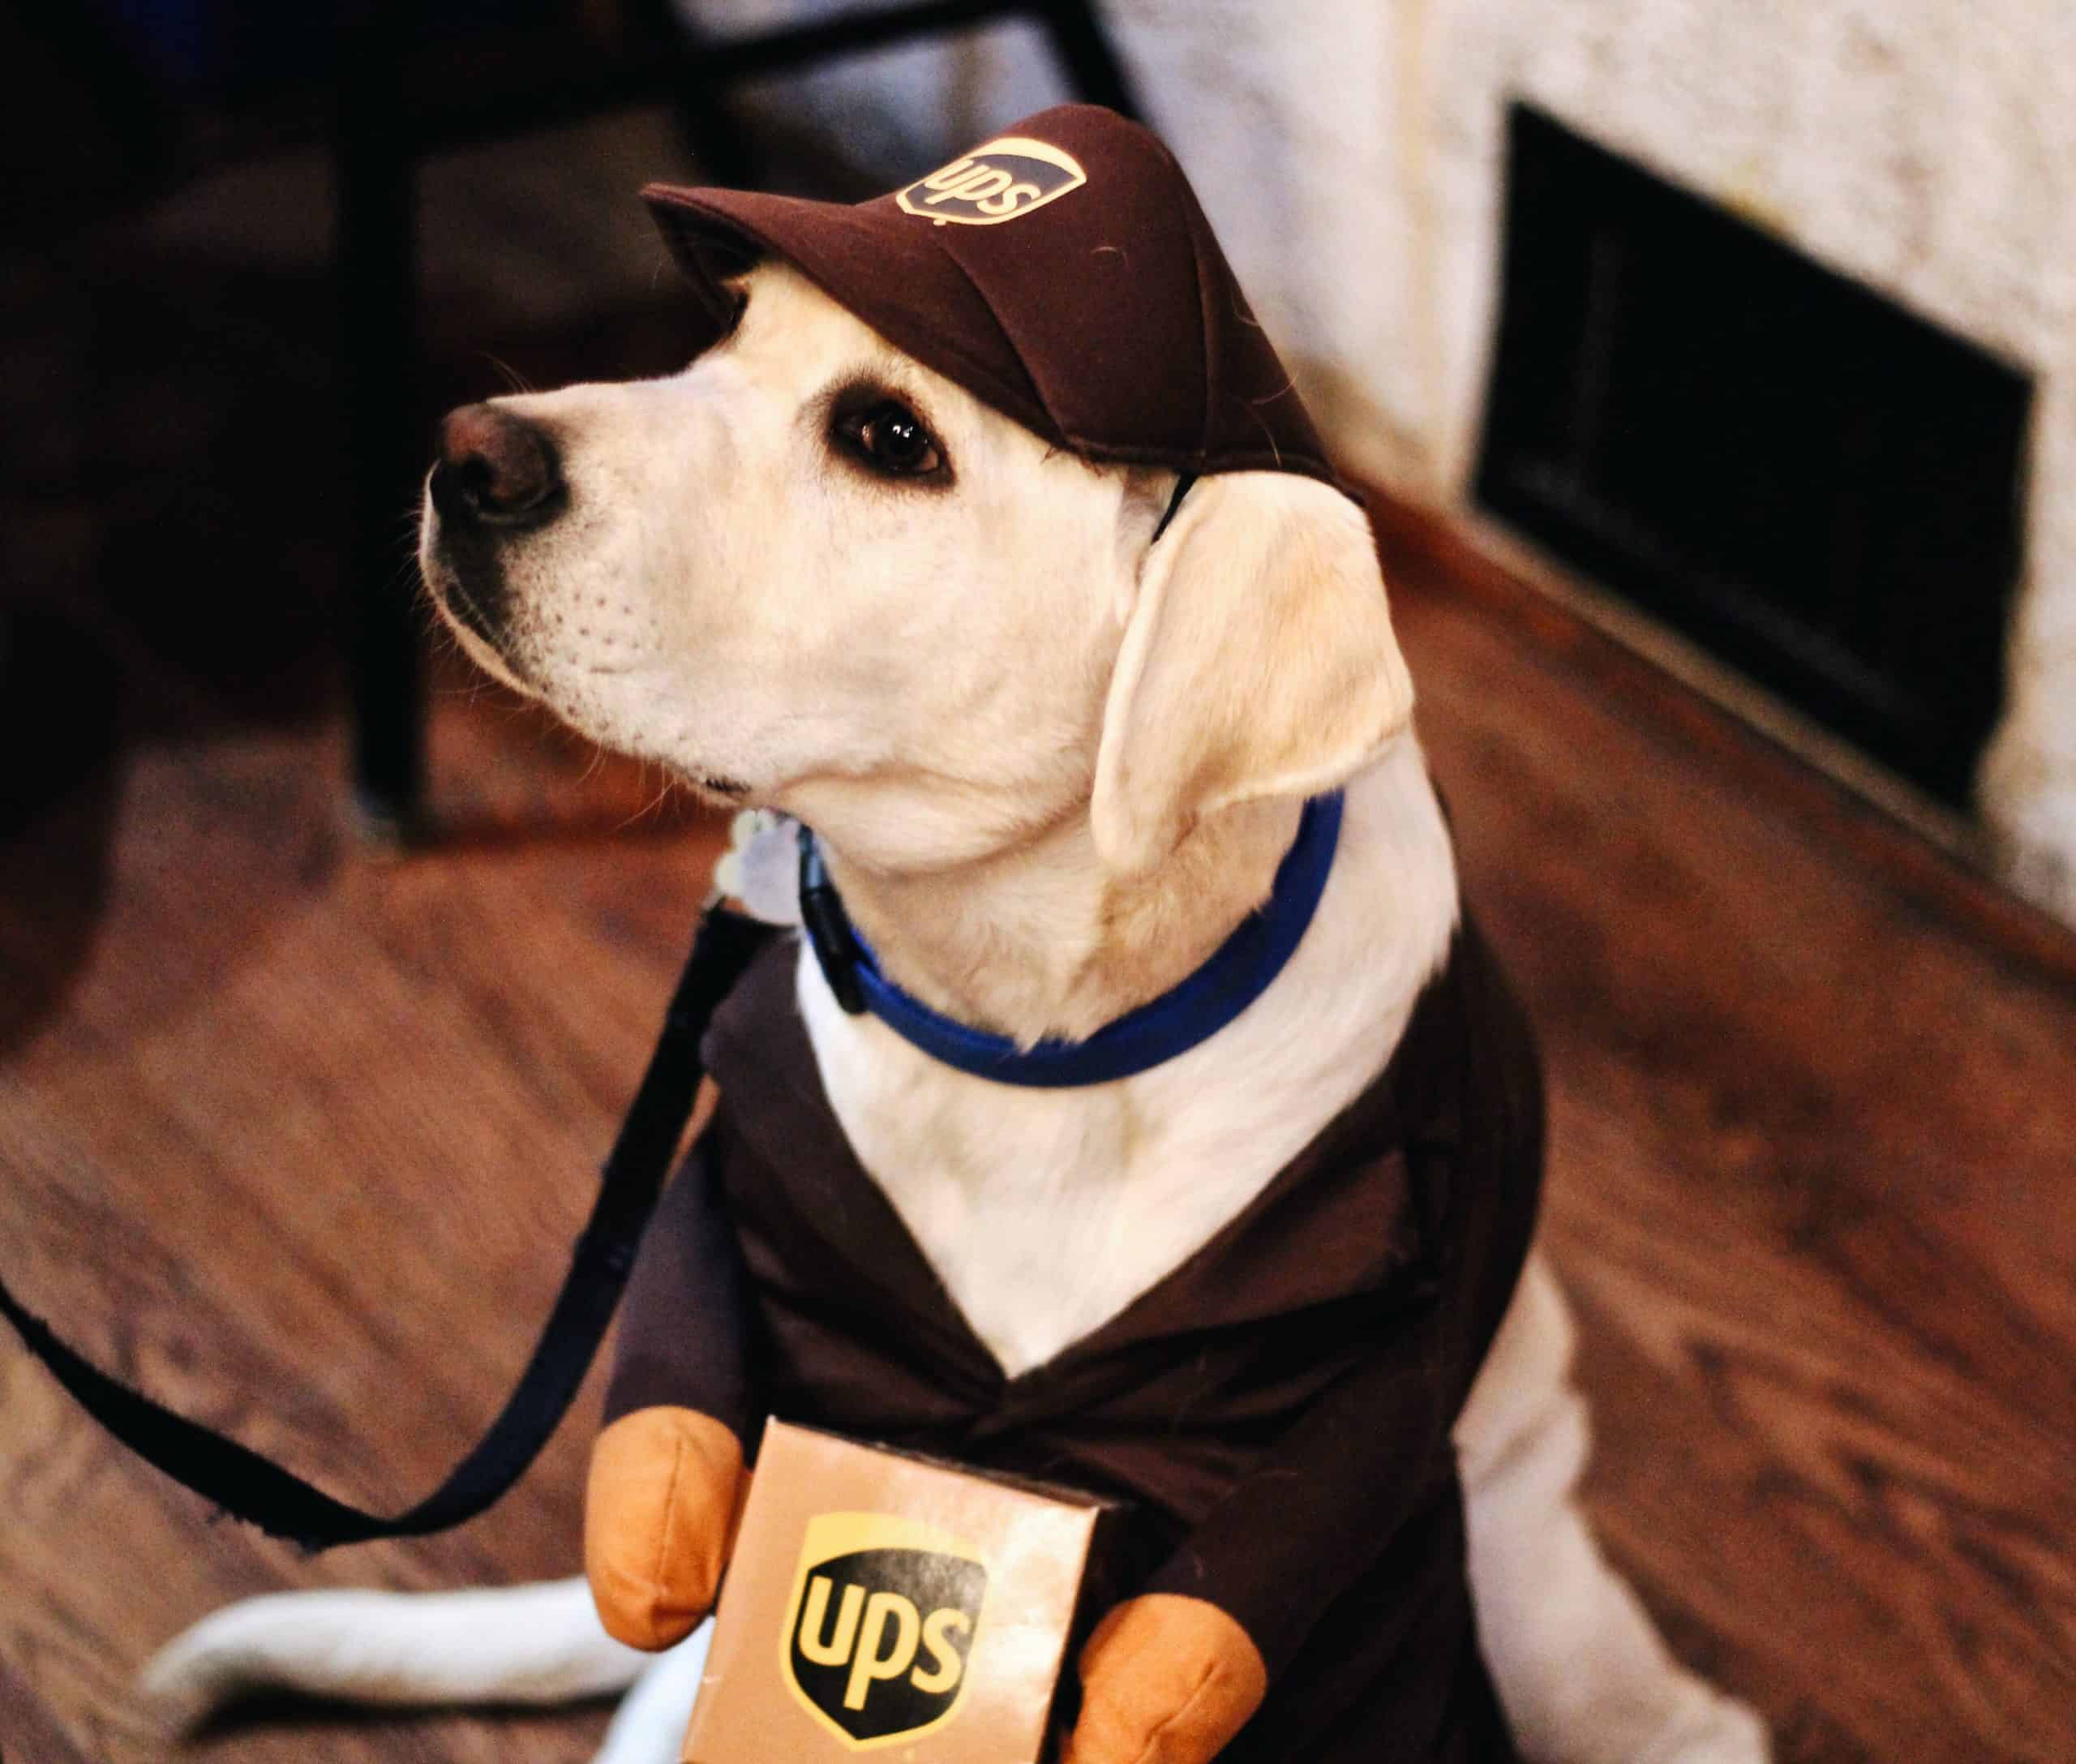 UPS publicité avec un chien